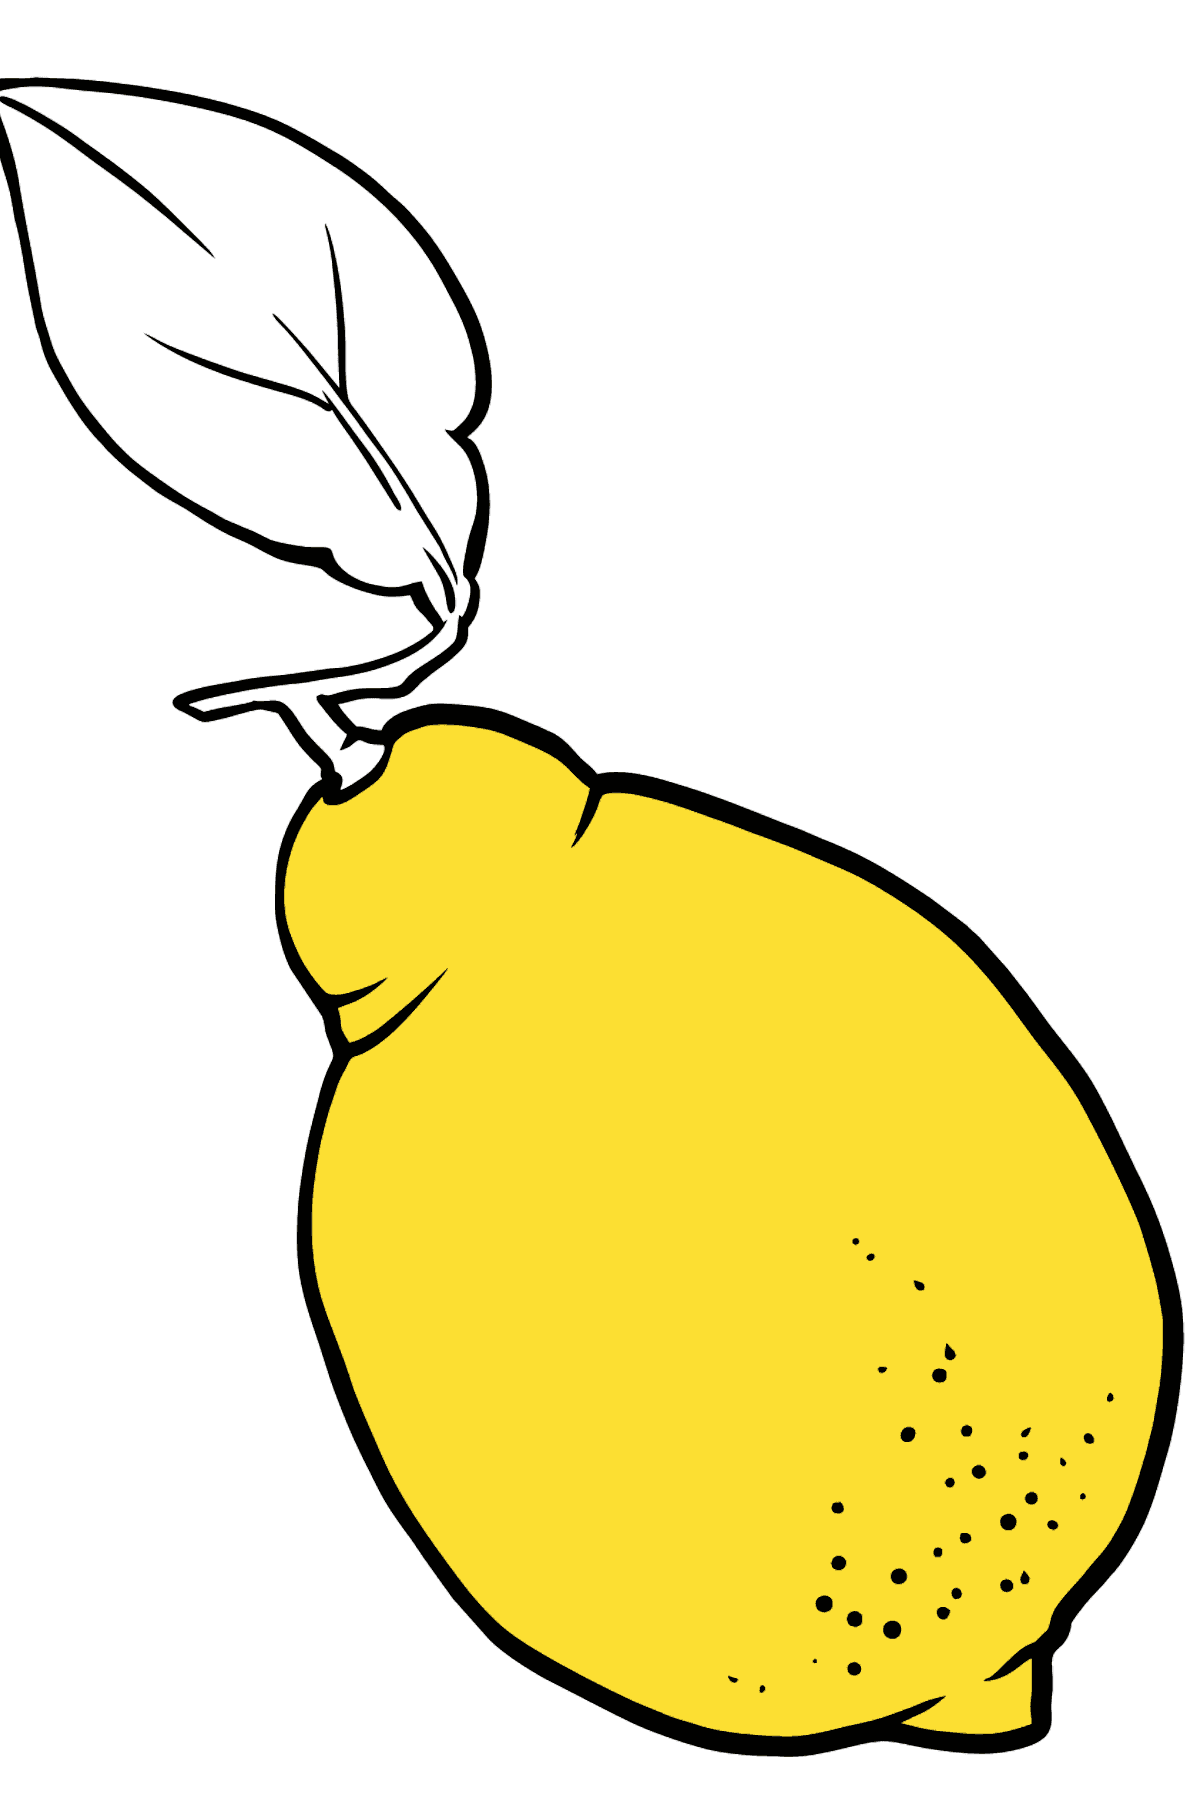 Desenho de limão para colorir - Imagens para Colorir para Crianças